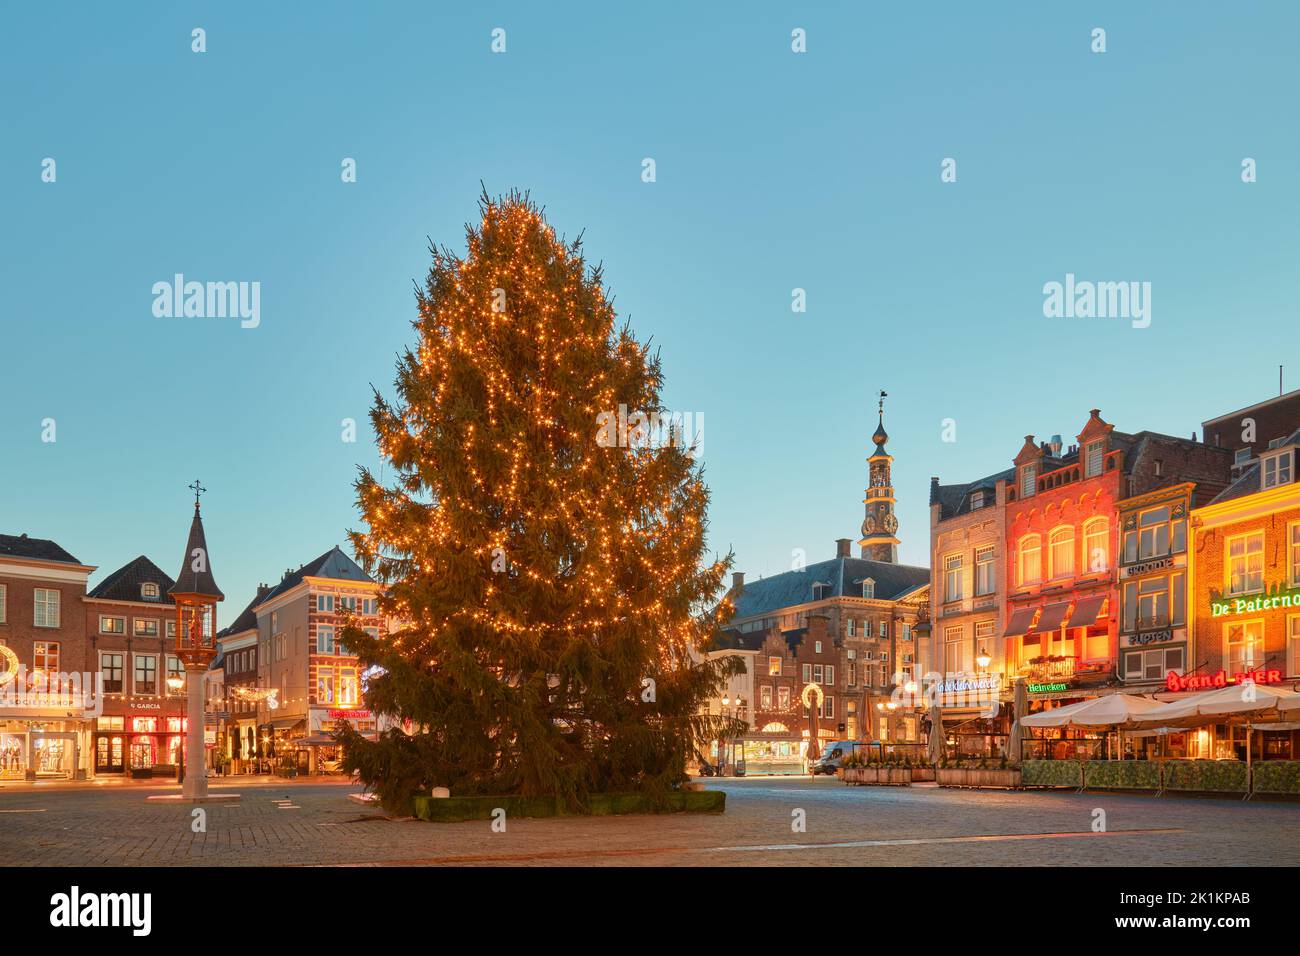 Den bosch, Países Bajos - 21 de diciembre de 2021: Gran árbol de navidad con luces en la plaza central 'Markt' rodeado de pubs, restaurantes y sho Foto de stock